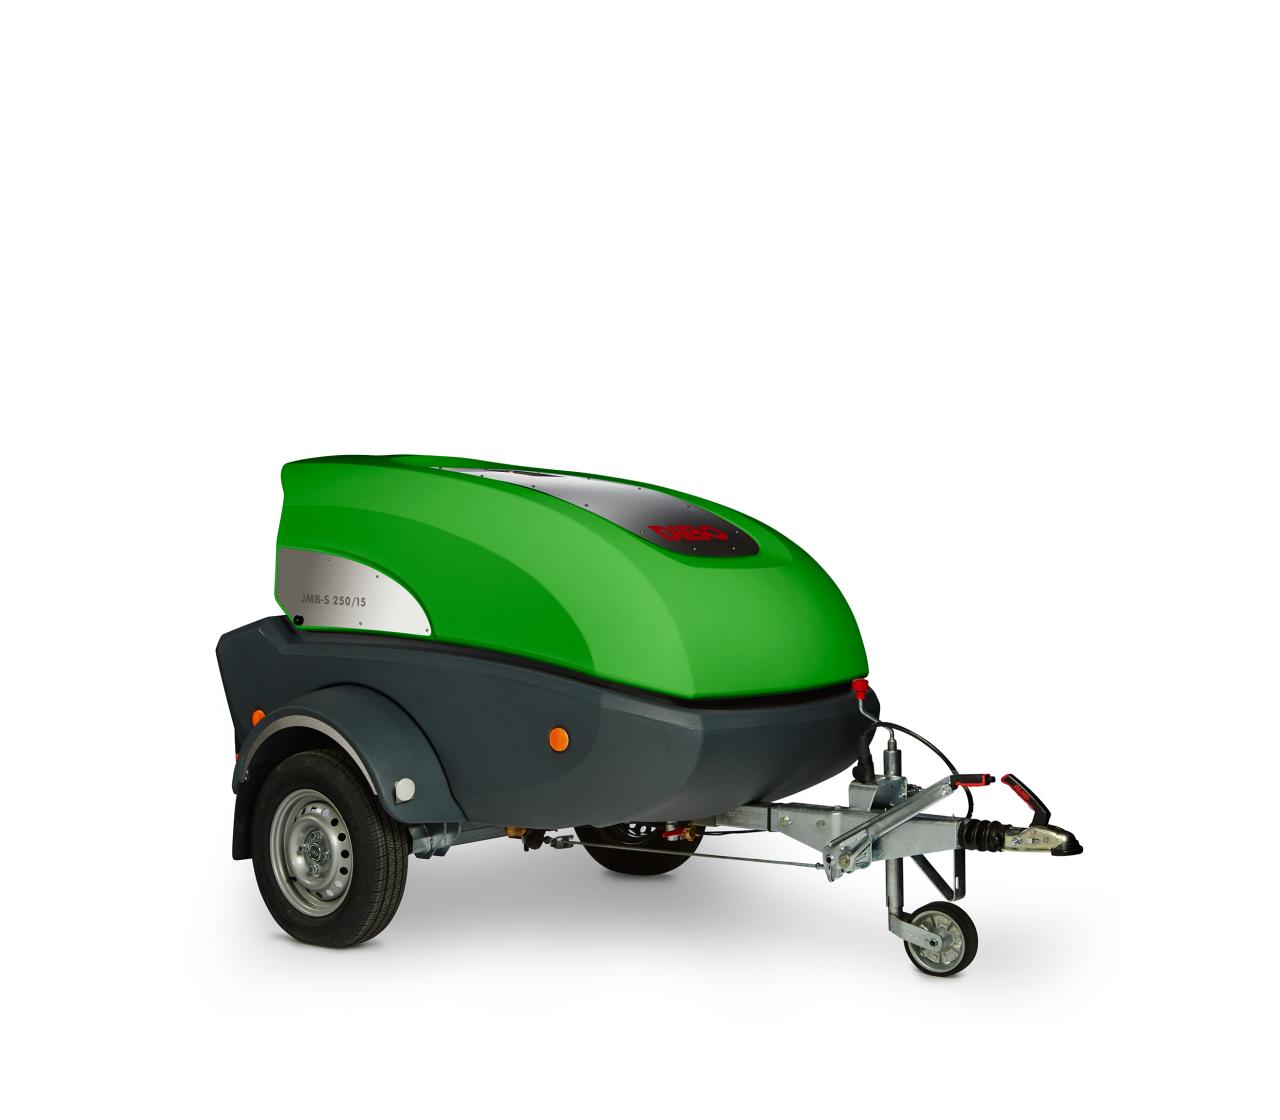 DiBO JMB-S is een ultracompacte mobiele warmwater hogedrukreiniger op een trailer uitgerust met moderne & groene technologieën